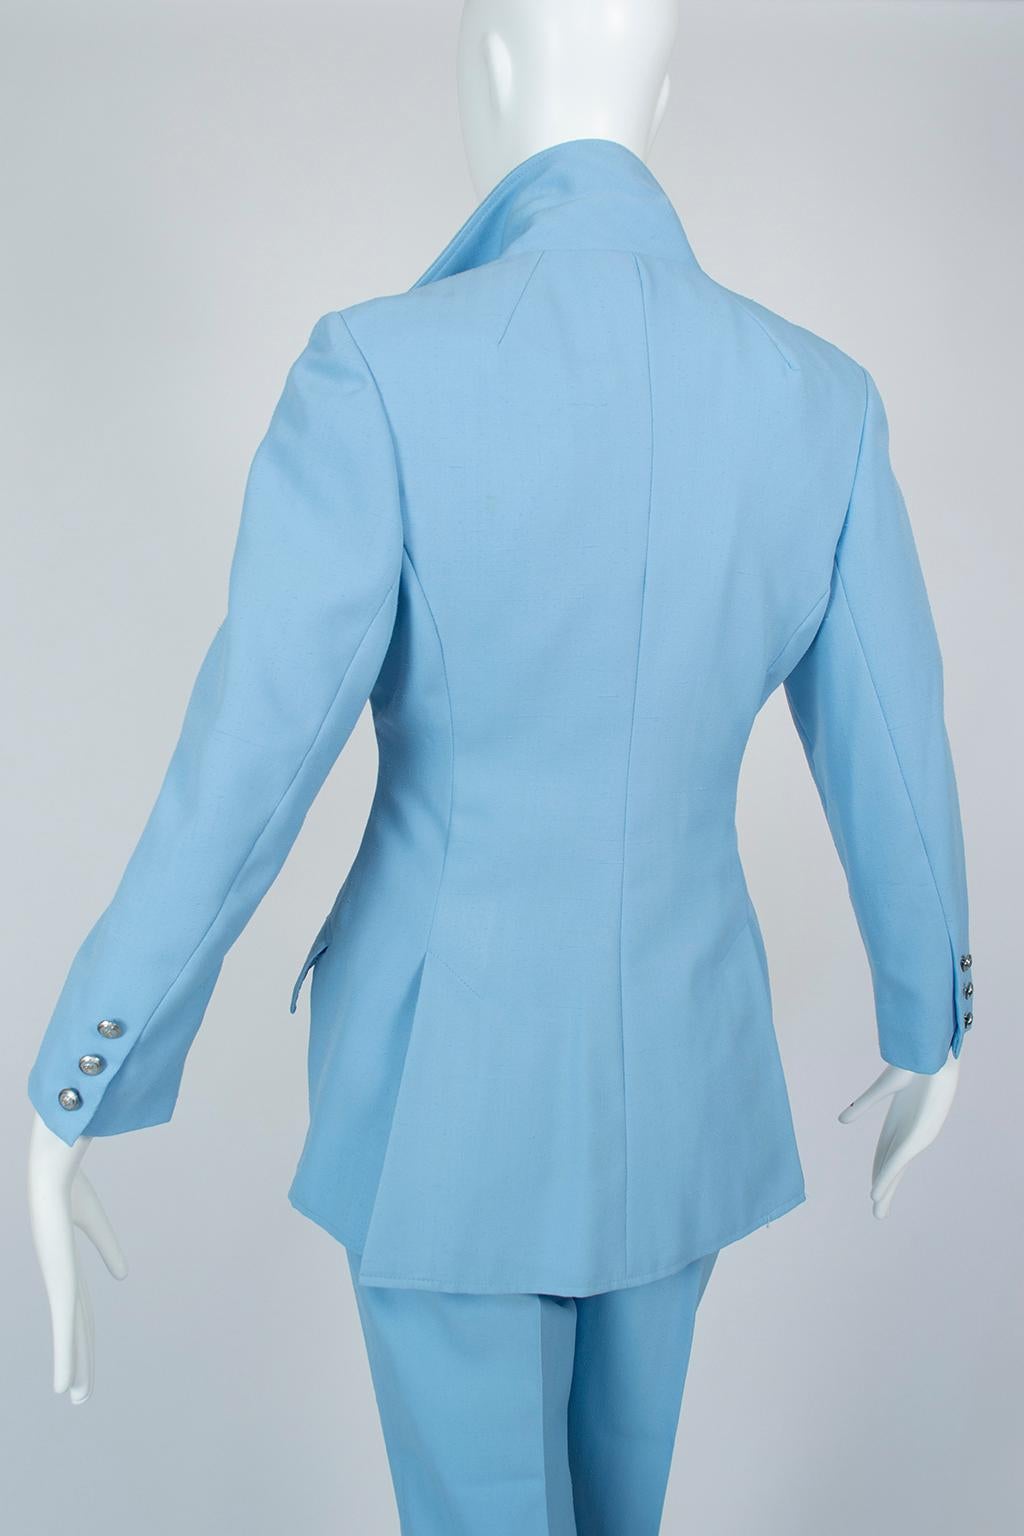 The Lilli Ann Paris Powder Blue 3-Piece Western Pant Suit - XS, 1970s en vente 5